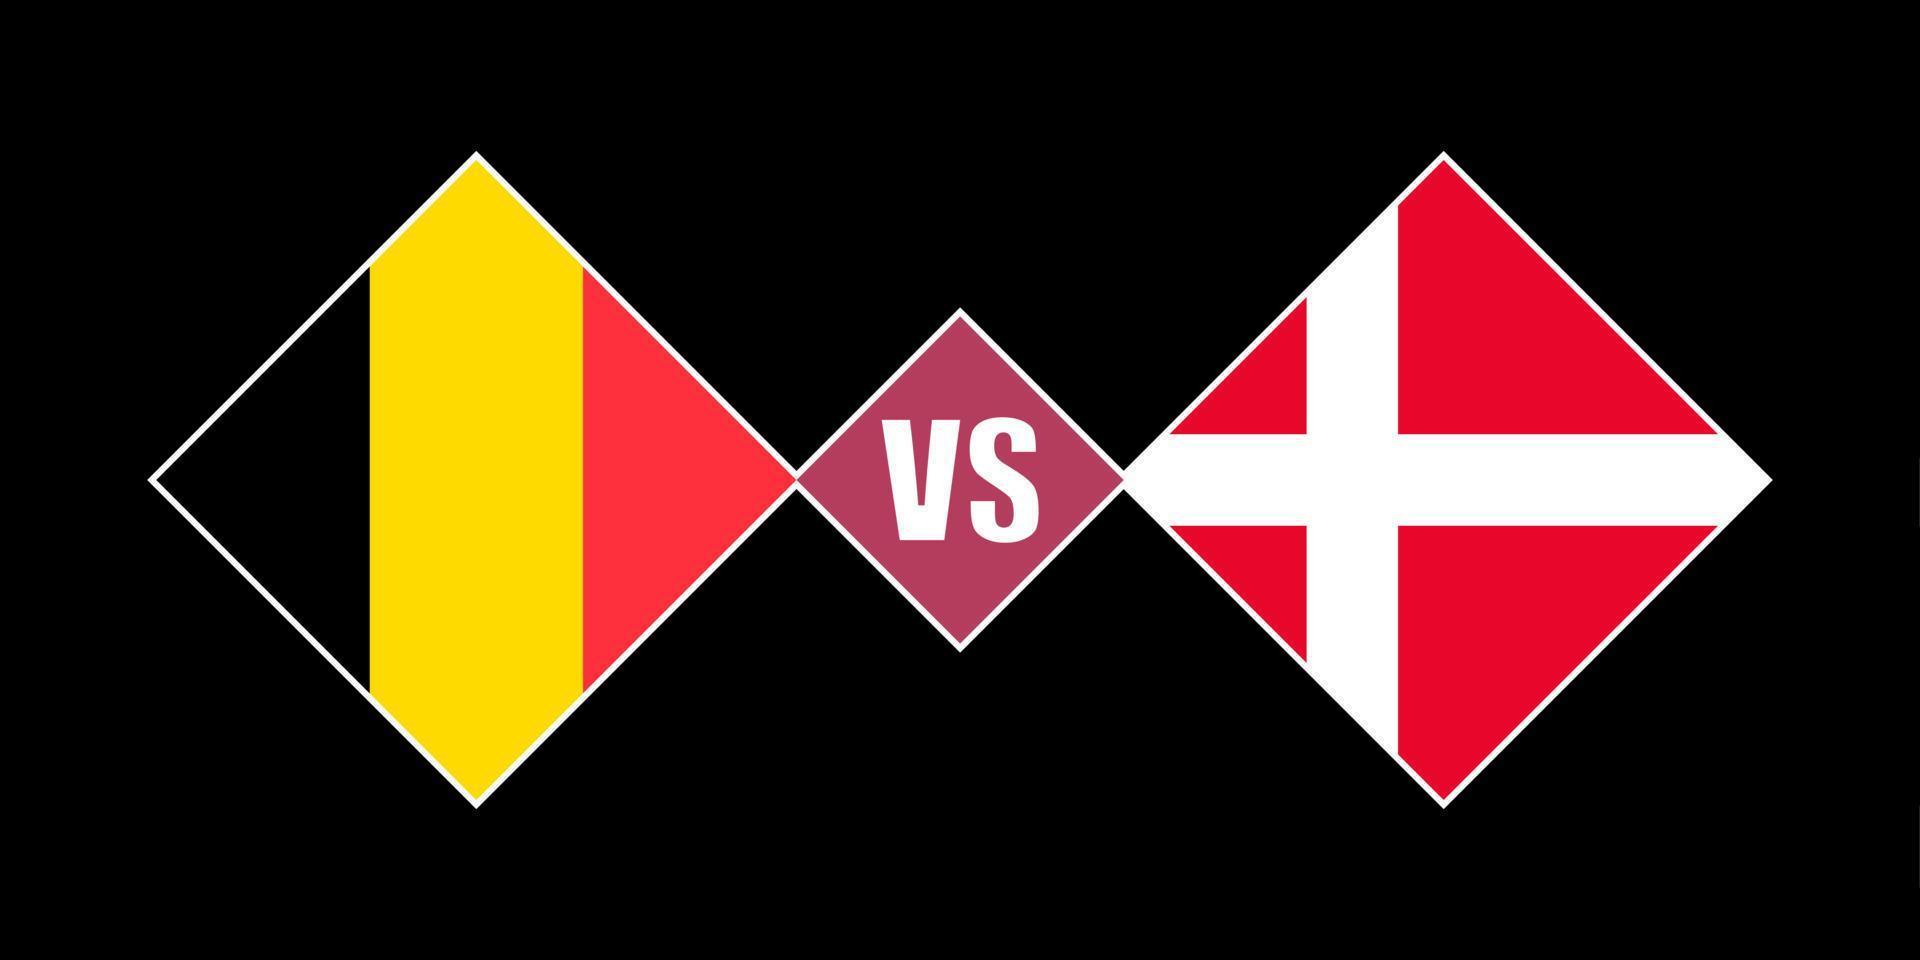 Belgium vs Denmark flag concept. Vector illustration.